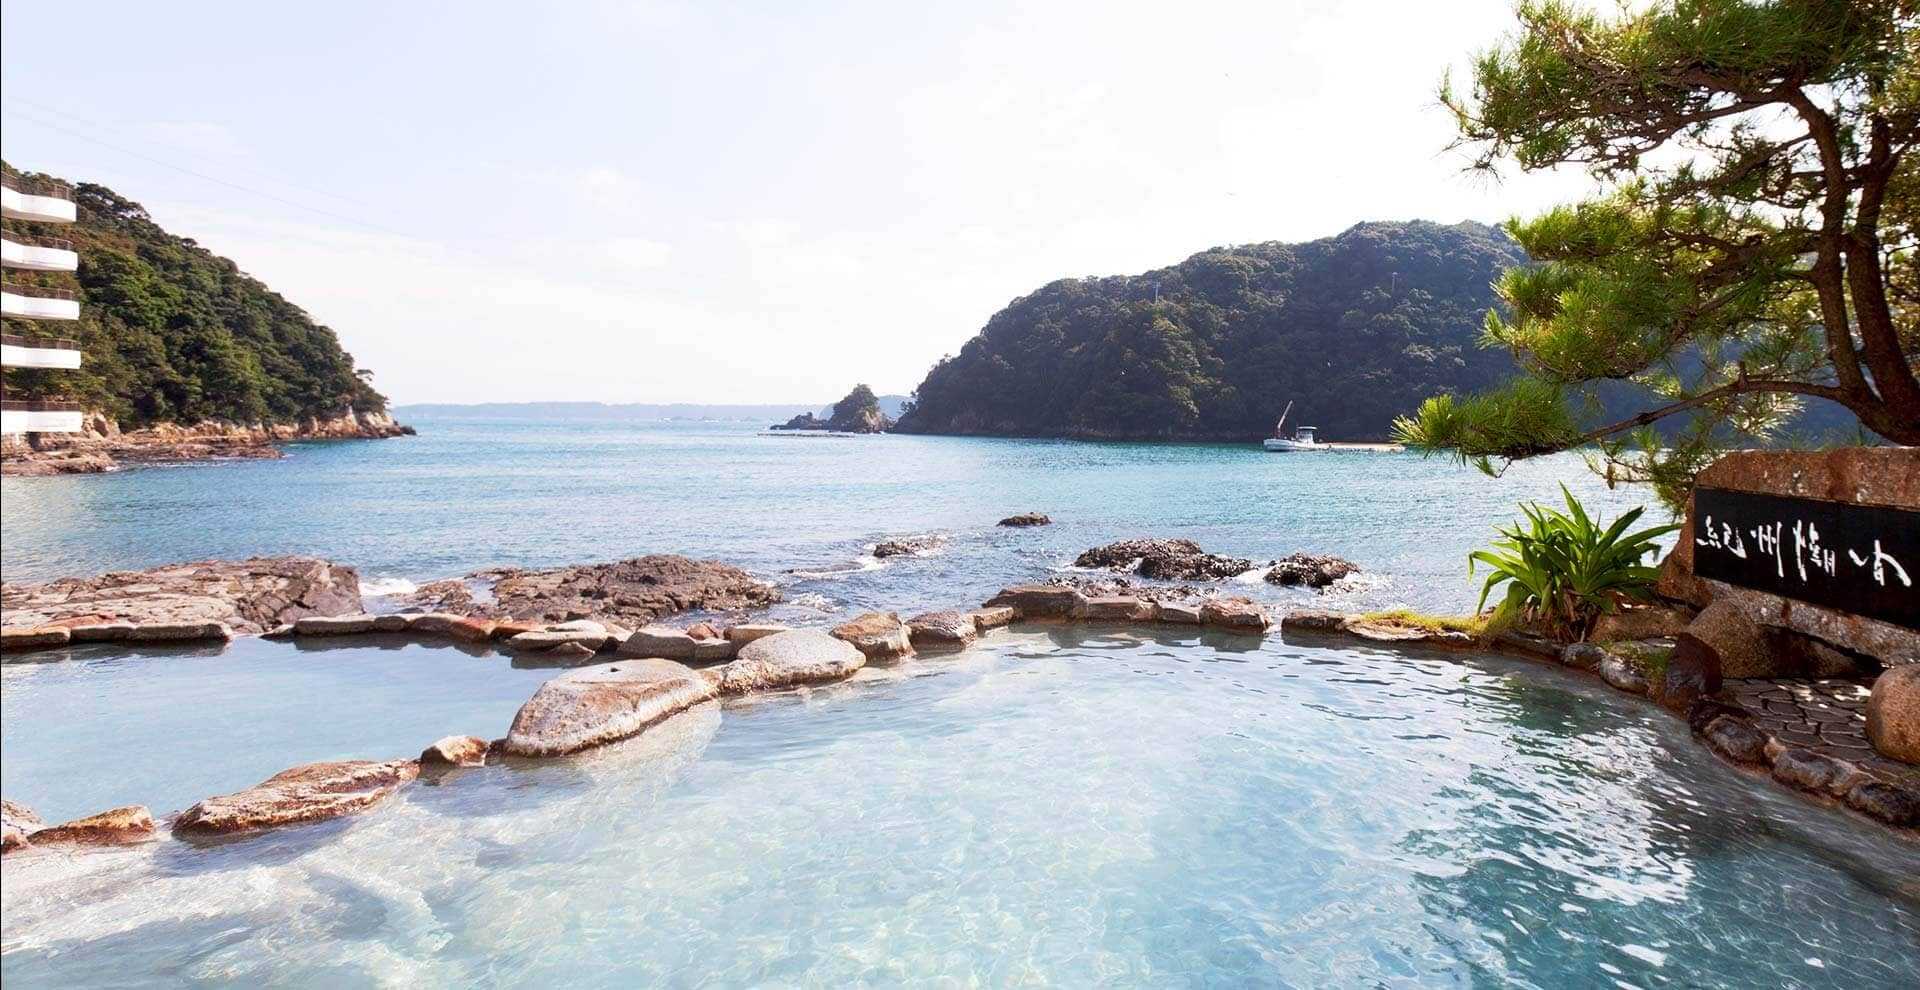 インフィニティ中の島 露天⾵呂 紀州潮聞之湯 1位 温泉 泉質 絶景